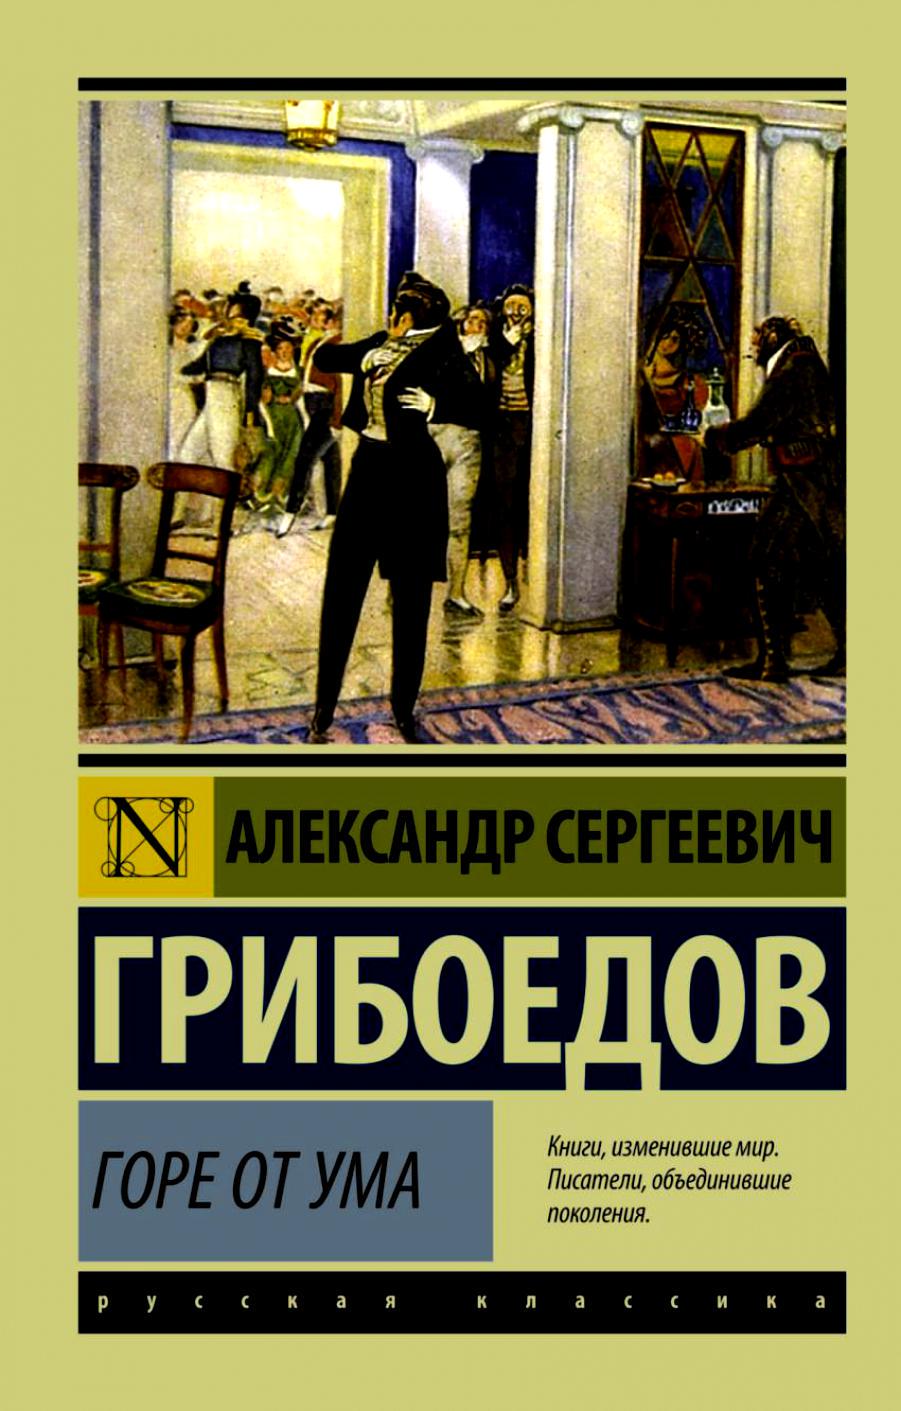 Рейтинг библиотек Москвы и самые популярные книги в октябре